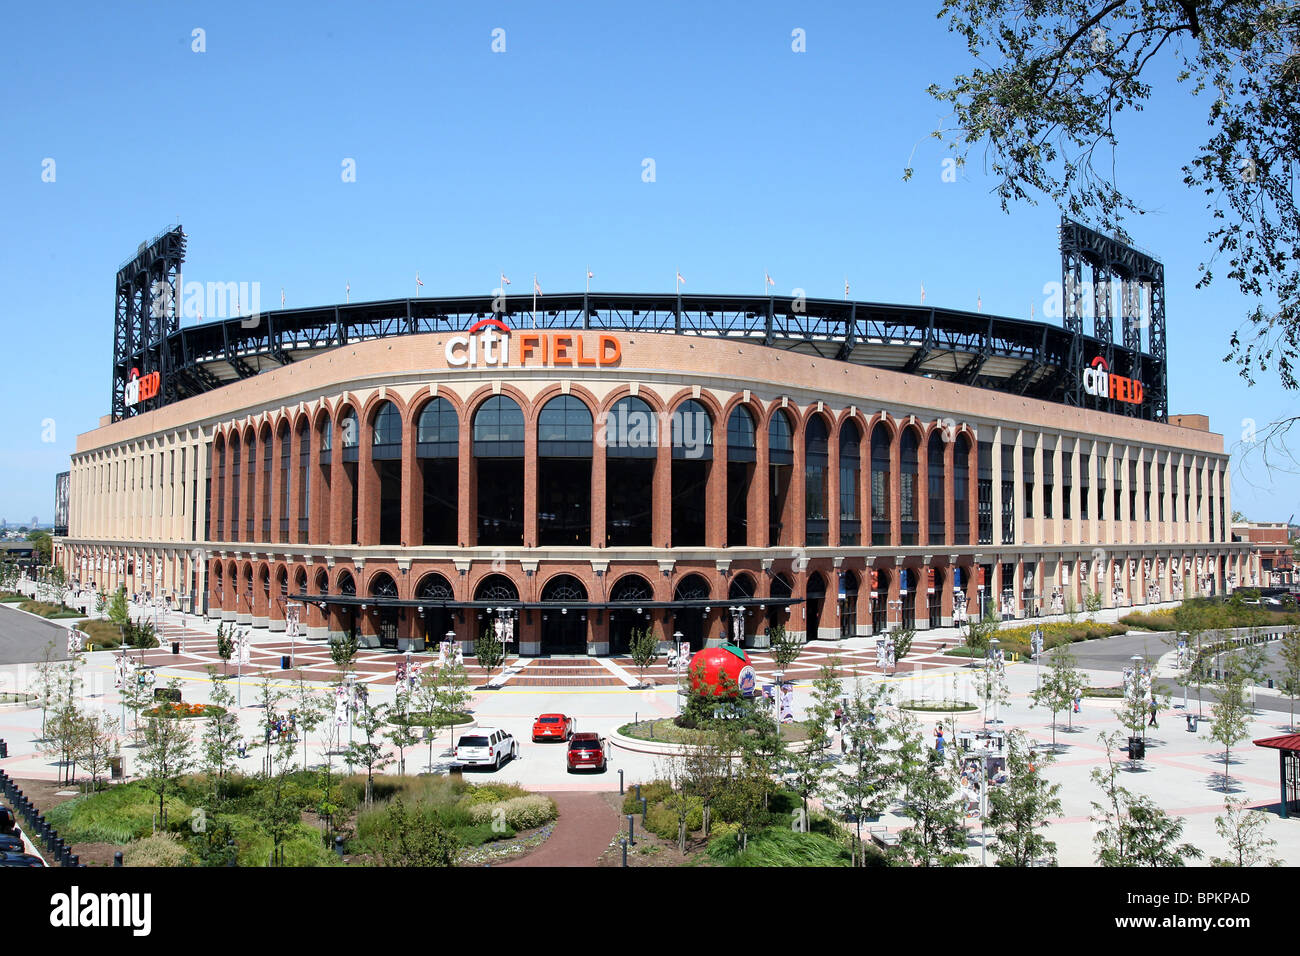 Citi Field Stadium dans le Queens, New York, accueil de l'équipe de baseball des Mets, achevée en 2009 en remplacement de Shea Stadium. Banque D'Images